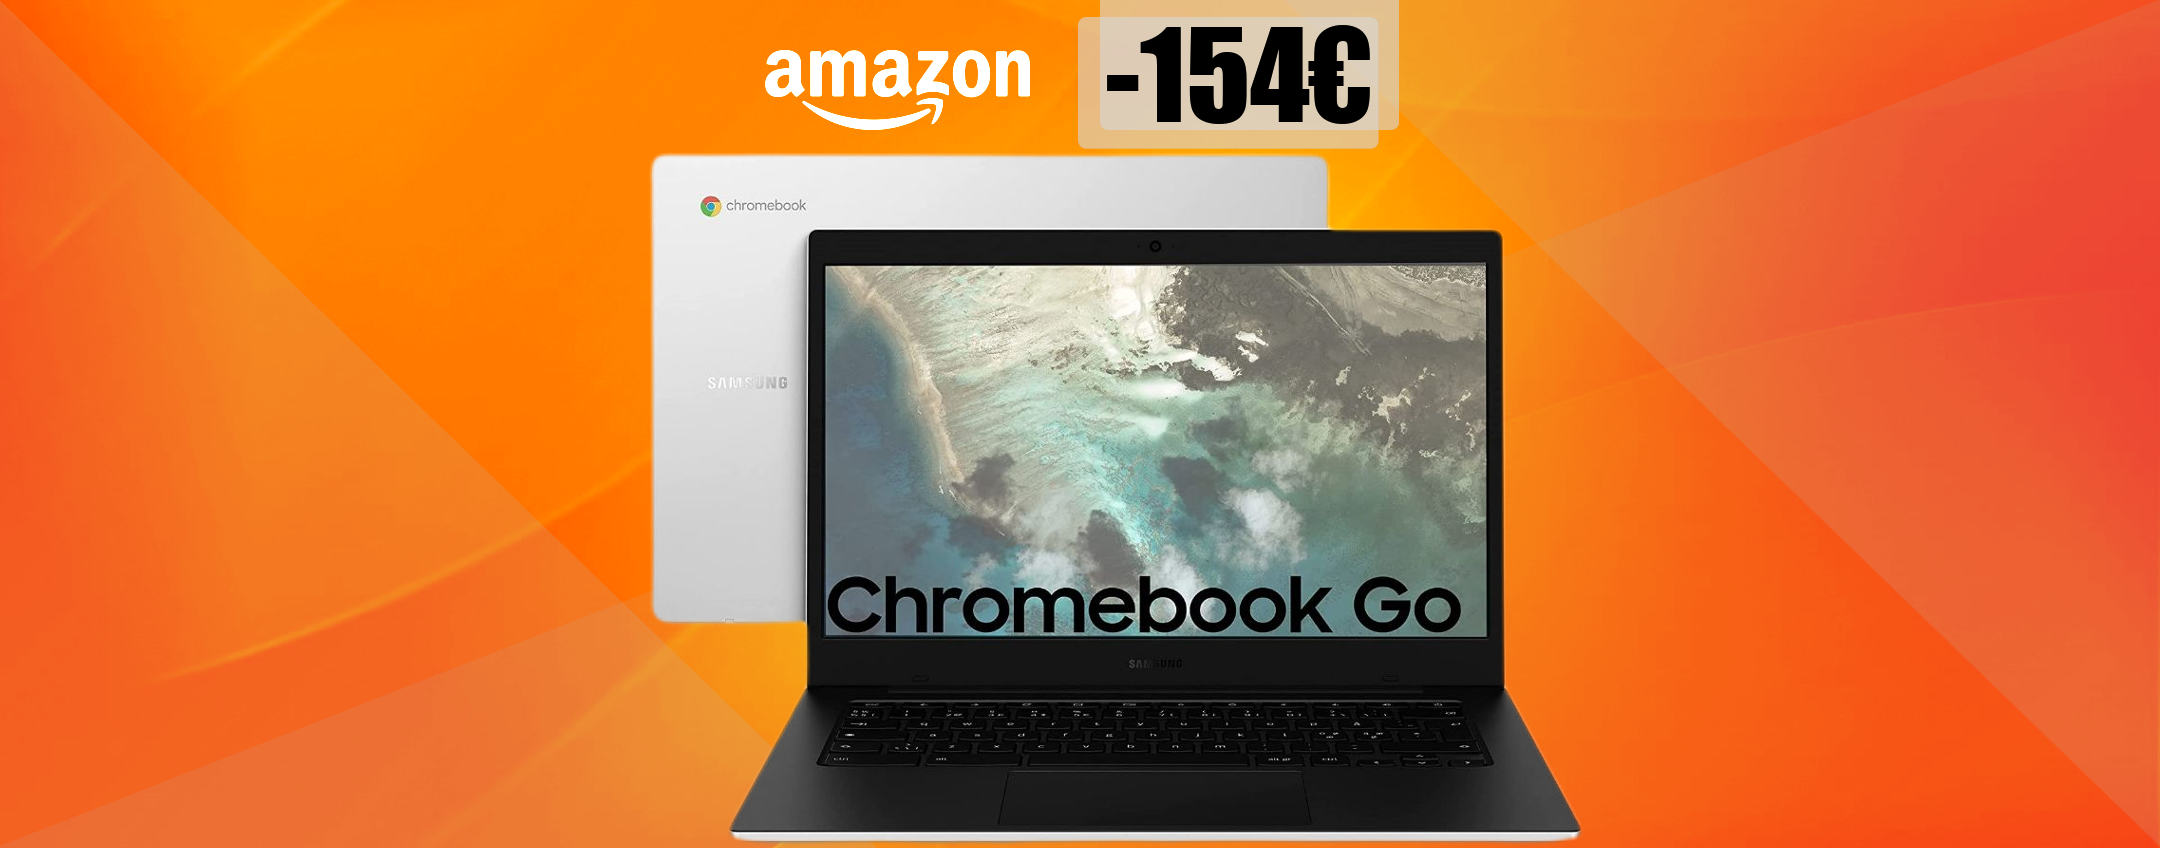 Chromebook Samsung: il SUPER SCONTO lo rende magnetico (-154€)